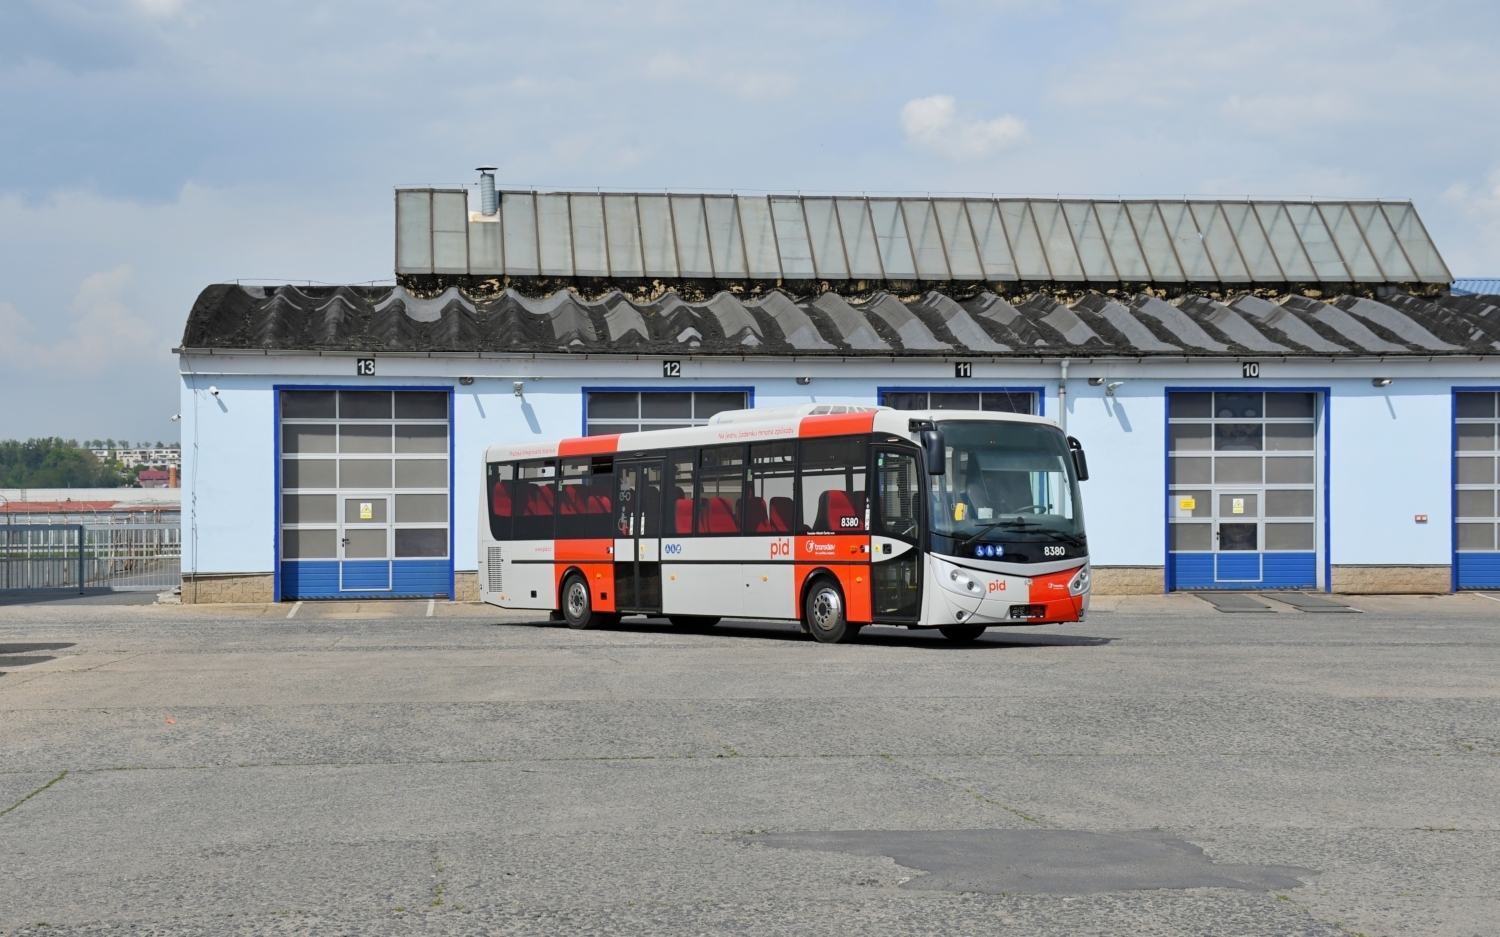 Prvním autobusem ICN 12, který se oblékl do nových barev PID, je vůz výrobního čísla 40. Zachycen byl po kompletaci výsostných znaků integrovaného systému v rakovnickém areálu dopravce. (foto: Vojtěch Mařík)